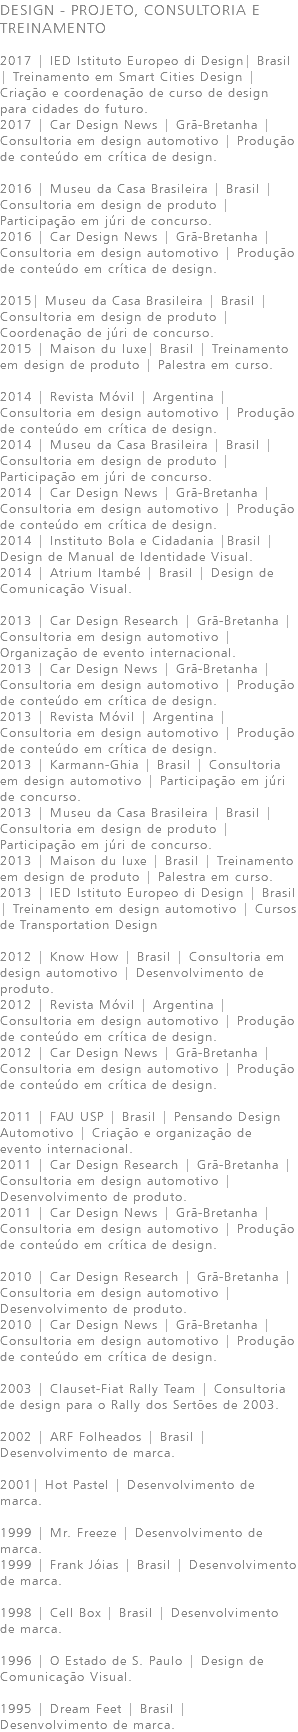 DESIGN - PROJETO, CONSULTORIA E TREINAMENTO 2017 | IED Istituto Europeo di Design| Brasil | Treinamento em Smart Cities Design | Criação e coordenação de curso de design para cidades do futuro. 2017 | Car Design News | Grã-Bretanha | Consultoria em design automotivo | Produção de conteúdo em crítica de design. 2016 | Museu da Casa Brasileira | Brasil | Consultoria em design de produto | Participação em júri de concurso. 2016 | Car Design News | Grã-Bretanha | Consultoria em design automotivo | Produção de conteúdo em crítica de design. 2015| Museu da Casa Brasileira | Brasil | Consultoria em design de produto | Coordenação de júri de concurso. 2015 | Maison du luxe| Brasil | Treinamento em design de produto | Palestra em curso. 2014 | Revista Móvil | Argentina | Consultoria em design automotivo | Produção de conteúdo em crítica de design. 2014 | Museu da Casa Brasileira | Brasil | Consultoria em design de produto | Participação em júri de concurso. 2014 | Car Design News | Grã-Bretanha | Consultoria em design automotivo | Produção de conteúdo em crítica de design. 2014 | Instituto Bola e Cidadania |Brasil | Design de Manual de Identidade Visual. 2014 | Atrium Itambé | Brasil | Design de Comunicação Visual. 2013 | Car Design Research | Grã-Bretanha | Consultoria em design automotivo | Organização de evento internacional. 2013 | Car Design News | Grã-Bretanha | Consultoria em design automotivo | Produção de conteúdo em crítica de design. 2013 | Revista Móvil | Argentina | Consultoria em design automotivo | Produção de conteúdo em crítica de design. 2013 | Karmann-Ghia | Brasil | Consultoria em design automotivo | Participação em júri de concurso. 2013 | Museu da Casa Brasileira | Brasil | Consultoria em design de produto | Participação em júri de concurso. 2013 | Maison du luxe | Brasil | Treinamento em design de produto | Palestra em curso. 2013 | IED Istituto Europeo di Design | Brasil | Treinamento em design automotivo | Cursos de Transportation Design 2012 | Know How | Brasil | Consultoria em design automotivo | Desenvolvimento de produto. 2012 | Revista Móvil | Argentina | Consultoria em design automotivo | Produção de conteúdo em crítica de design. 2012 | Car Design News | Grã-Bretanha | Consultoria em design automotivo | Produção de conteúdo em crítica de design. 2011 | FAU USP | Brasil | Pensando Design Automotivo | Criação e organização de evento internacional. 2011 | Car Design Research | Grã-Bretanha | Consultoria em design automotivo | Desenvolvimento de produto. 2011 | Car Design News | Grã-Bretanha | Consultoria em design automotivo | Produção de conteúdo em crítica de design. 2010 | Car Design Research | Grã-Bretanha | Consultoria em design automotivo | Desenvolvimento de produto. 2010 | Car Design News | Grã-Bretanha | Consultoria em design automotivo | Produção de conteúdo em crítica de design. 2003 | Clauset-Fiat Rally Team | Consultoria de design para o Rally dos Sertões de 2003. 2002 | ARF Folheados | Brasil | Desenvolvimento de marca. 2001| Hot Pastel | Desenvolvimento de marca. 1999 | Mr. Freeze | Desenvolvimento de marca. 1999 | Frank Jóias | Brasil | Desenvolvimento de marca. 1998 | Cell Box | Brasil | Desenvolvimento de marca. 1996 | O Estado de S. Paulo | Design de Comunicação Visual. 1995 | Dream Feet | Brasil | Desenvolvimento de marca. 